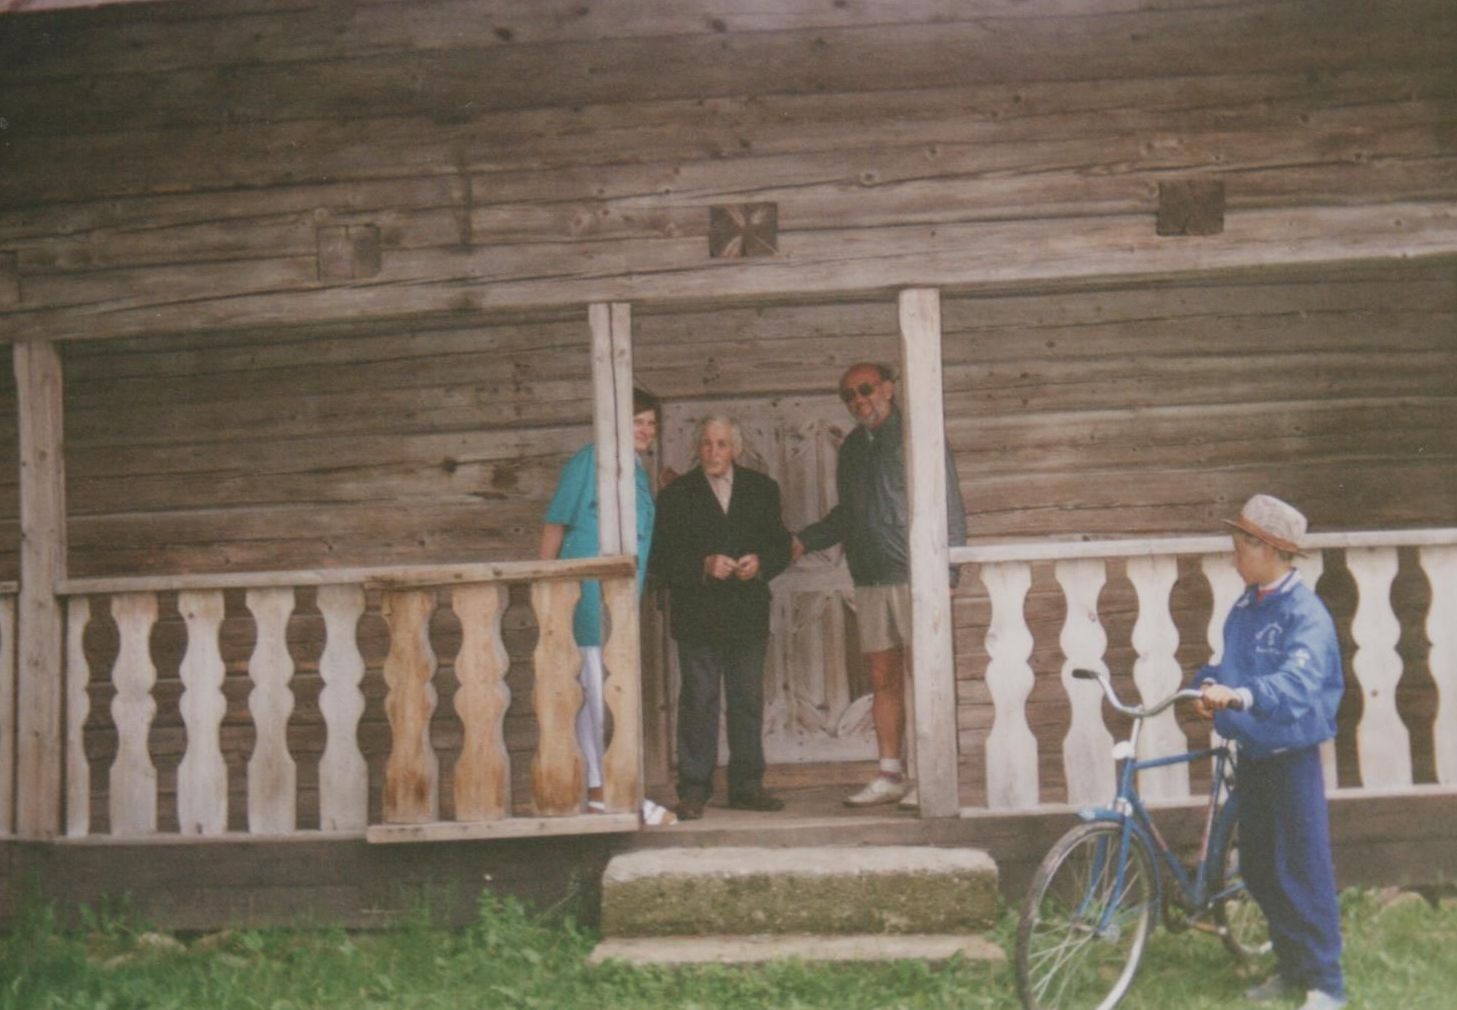 Su Archyvų departamento darbuotojais kiekvienais metais G. Ilgūnas išvykdavo į ekskursiją po Lietuvą. Paežeriuose (Vilkaviškio raj.) aplanko V. Kudirkos klėtelę. 1995 m. birželio 3 d.